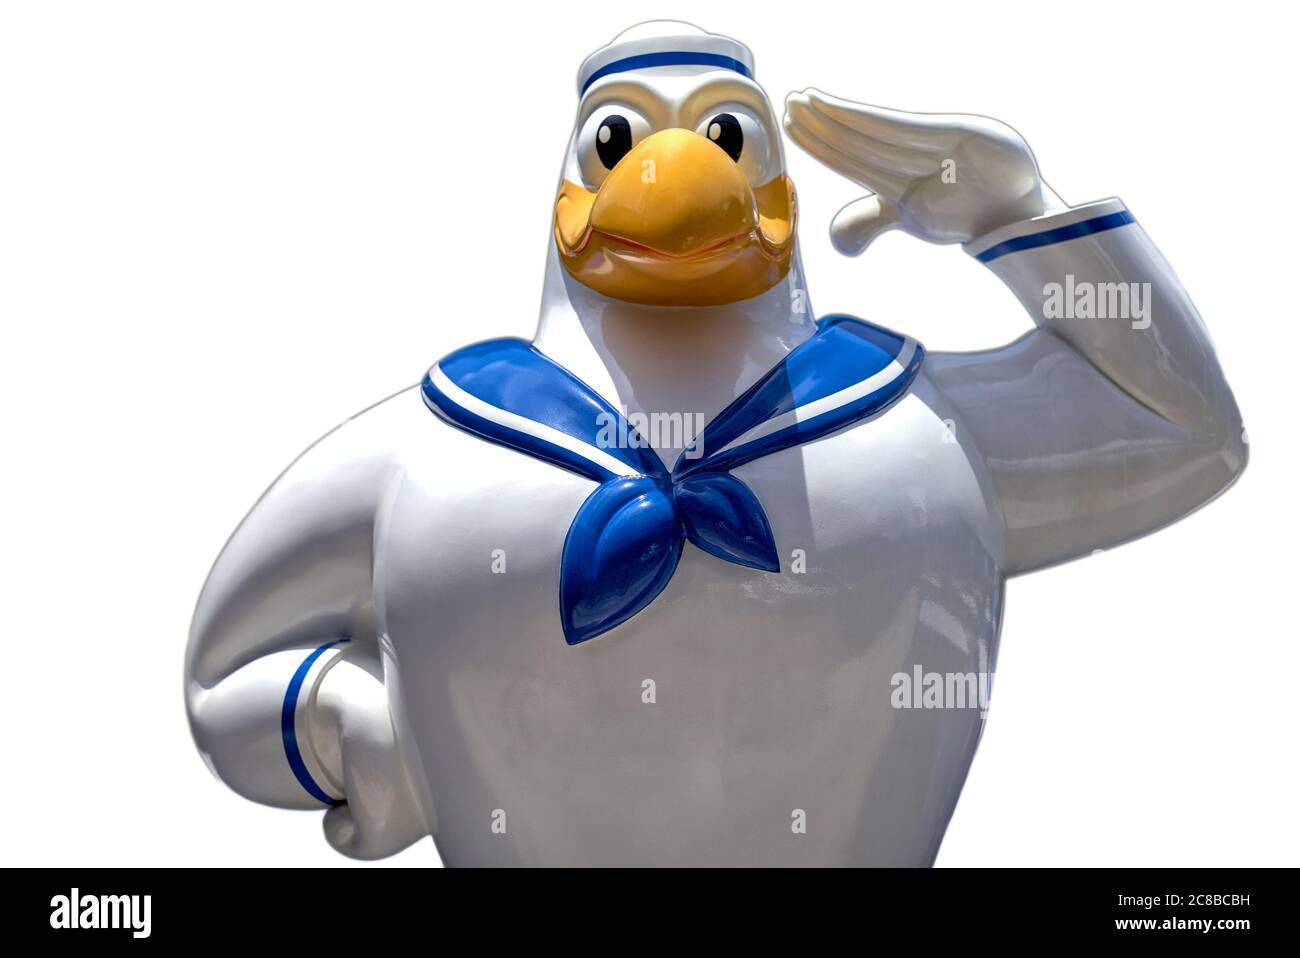 Découpez un oiseau amusant habillé d'un uniforme de la marine et salant Banque D'Images